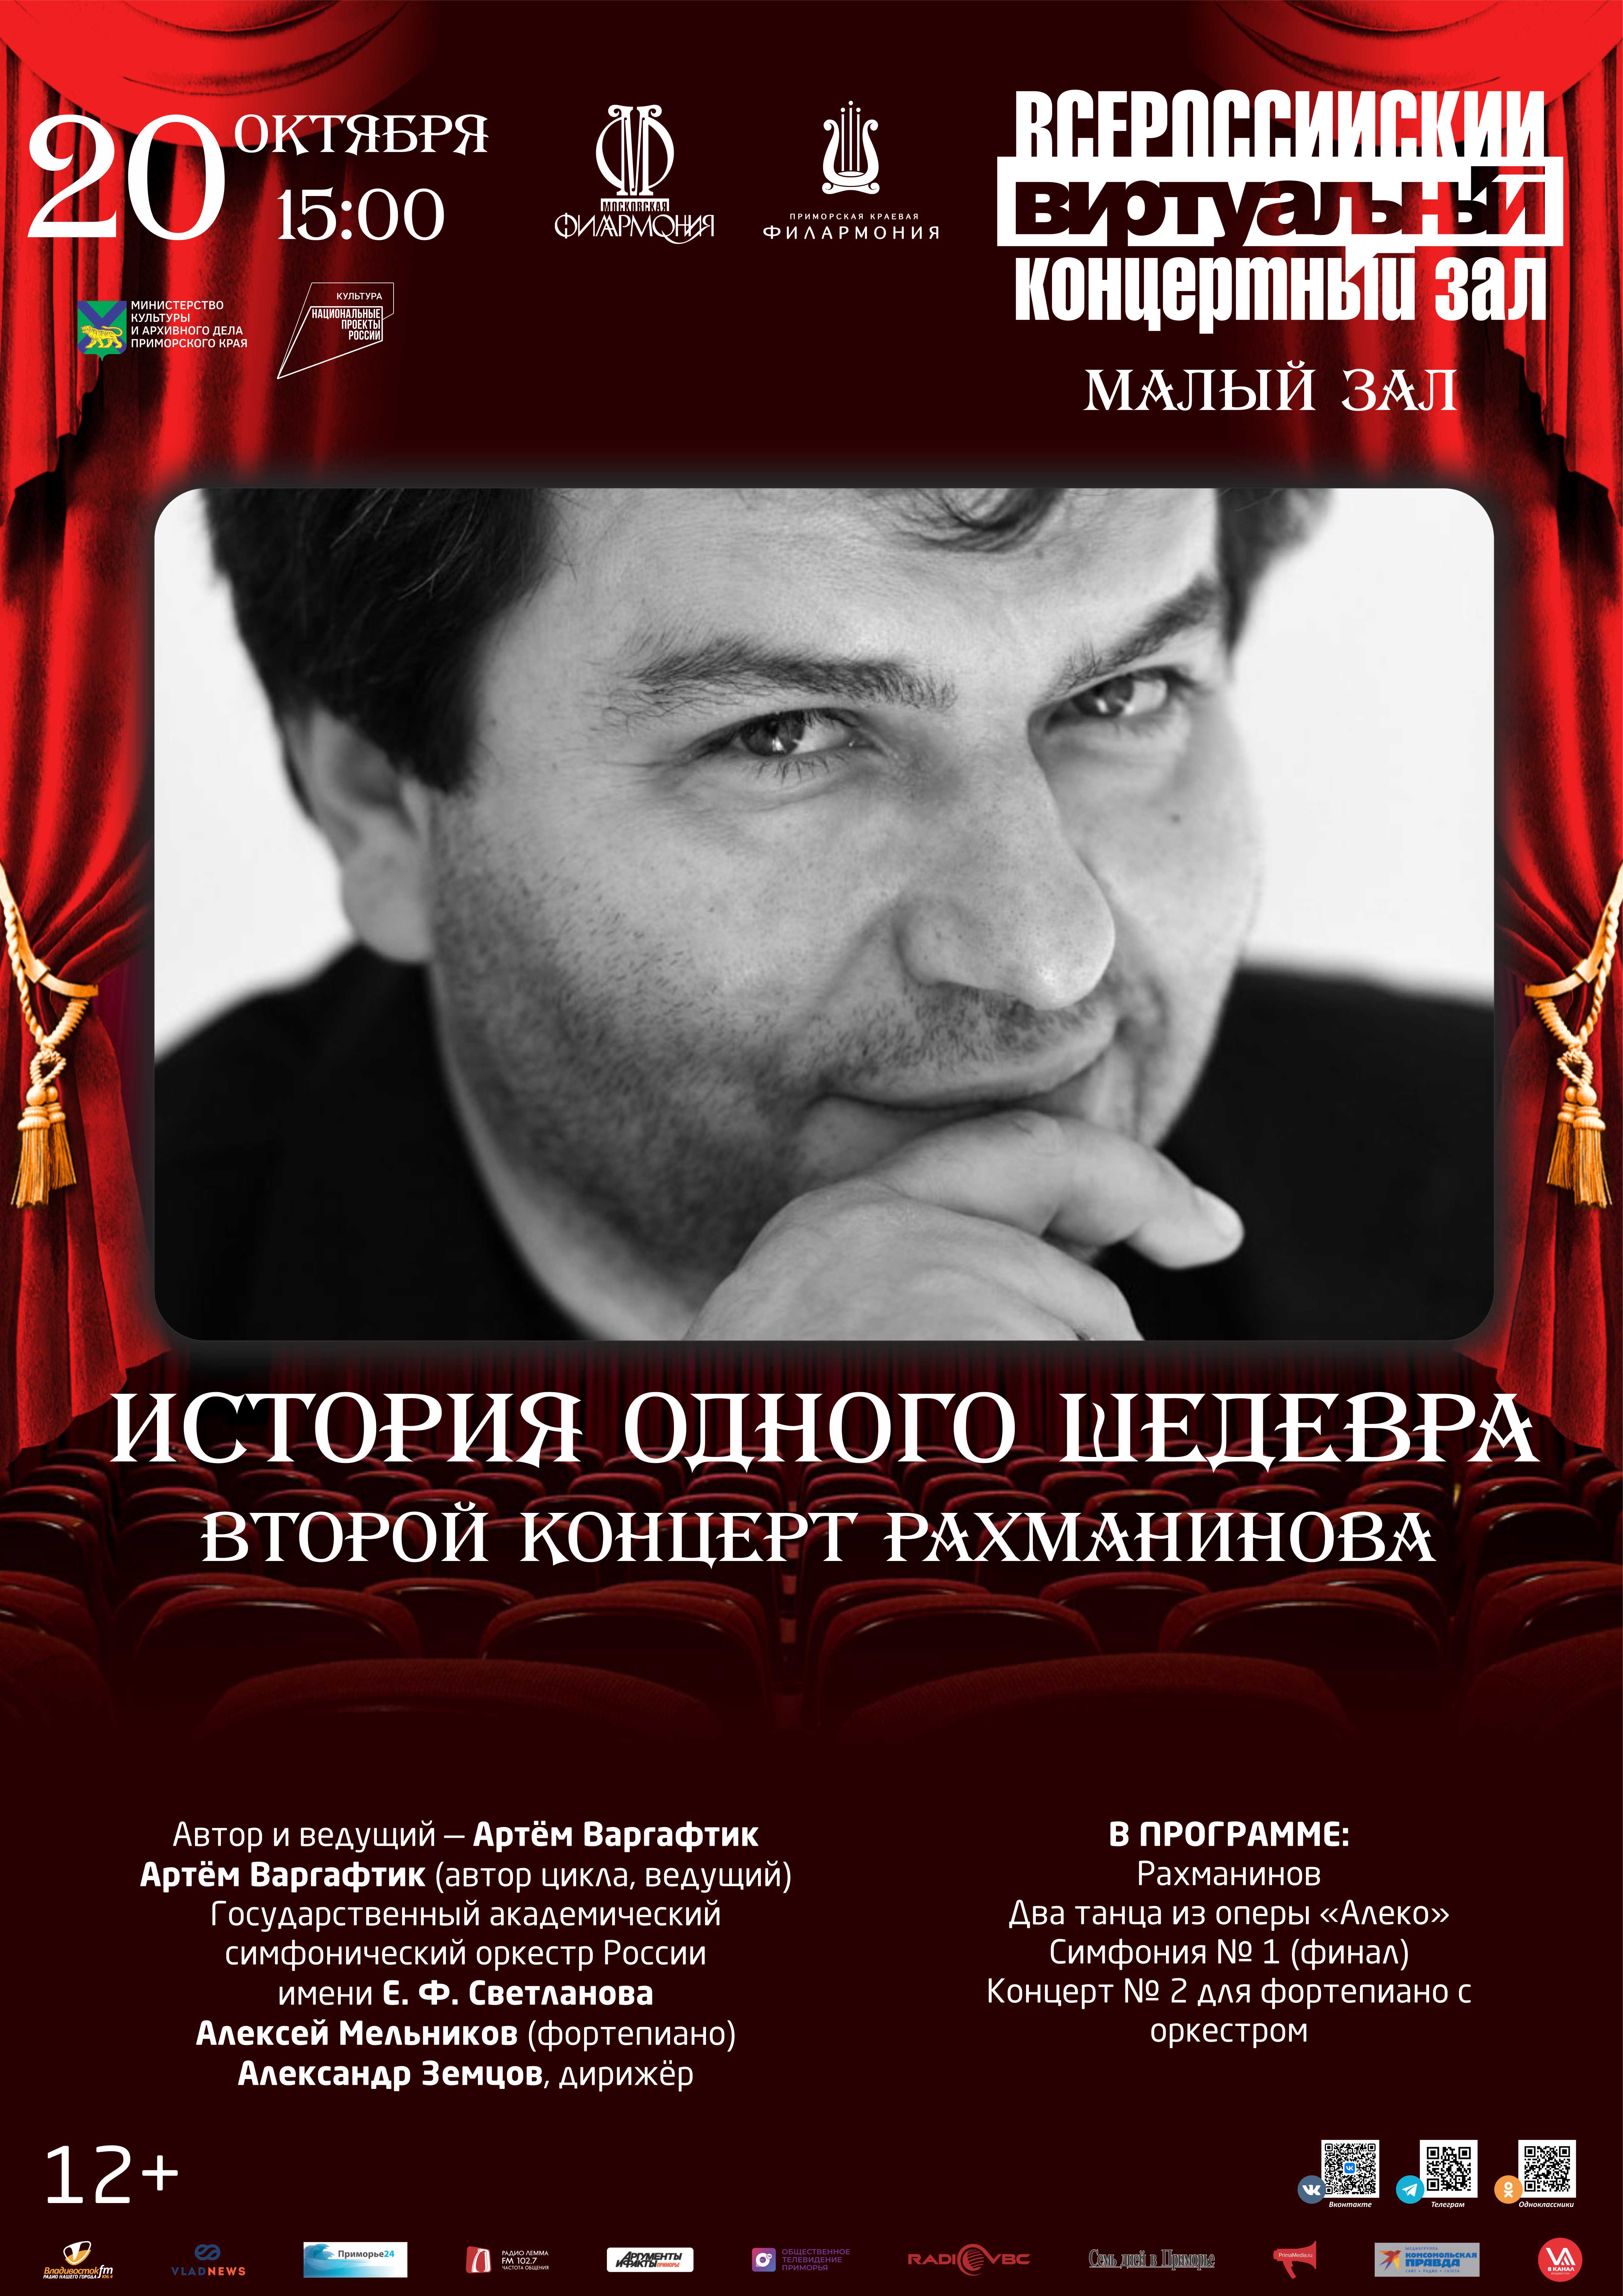 20 октября История одного шедевра Второй концерт Рахманинова